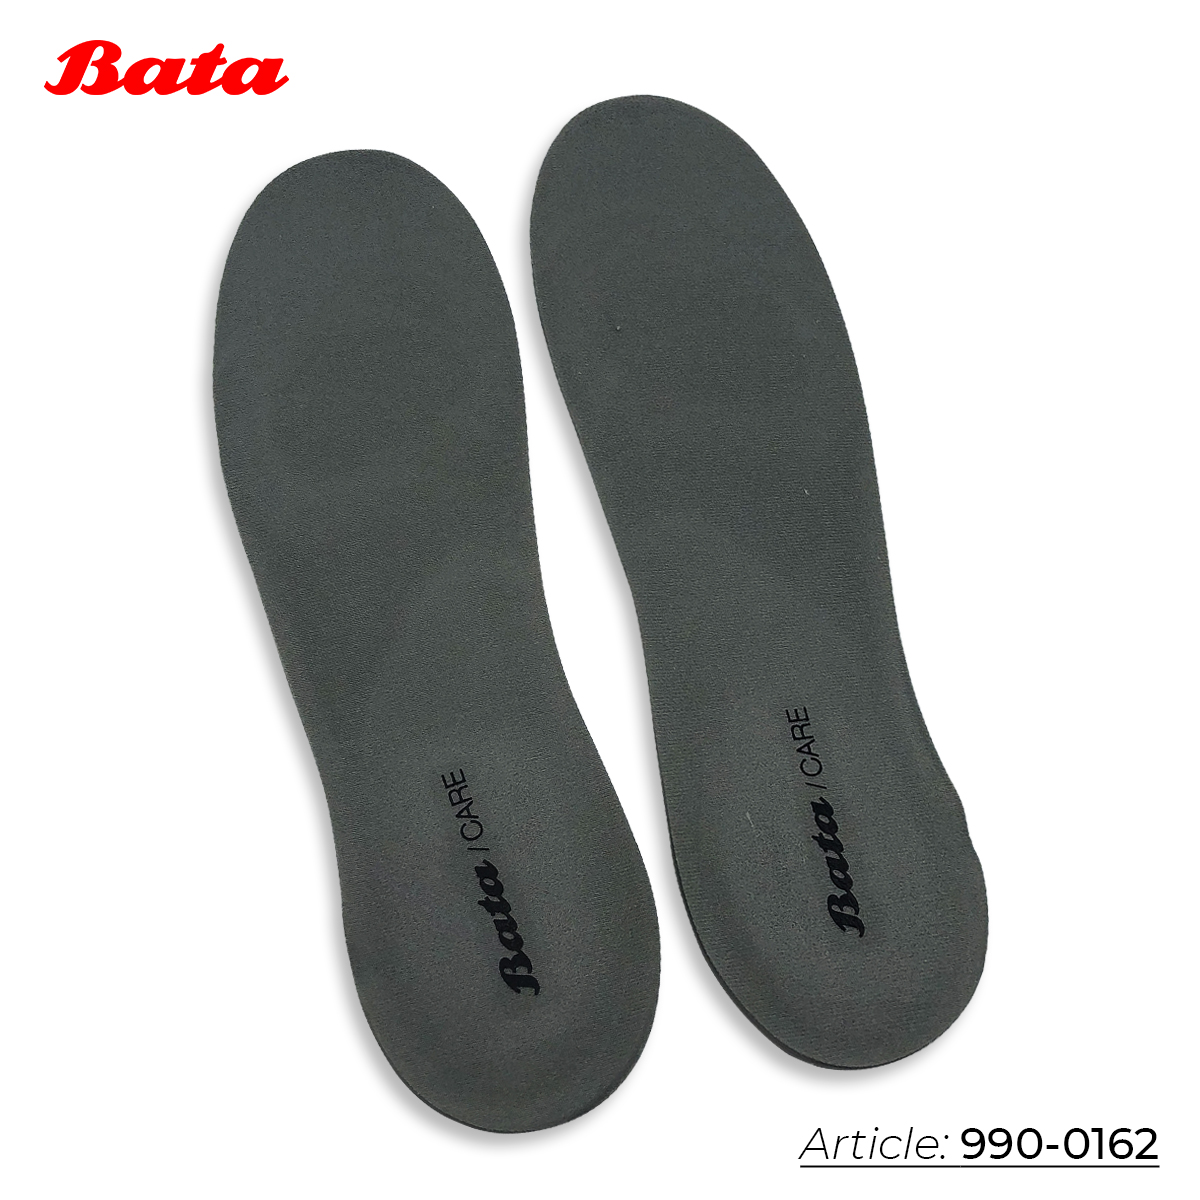 Lót giầy dạng gel hấp thụ sốc vượt trội dành cho nữ Thương hiệu Bata 990-0162